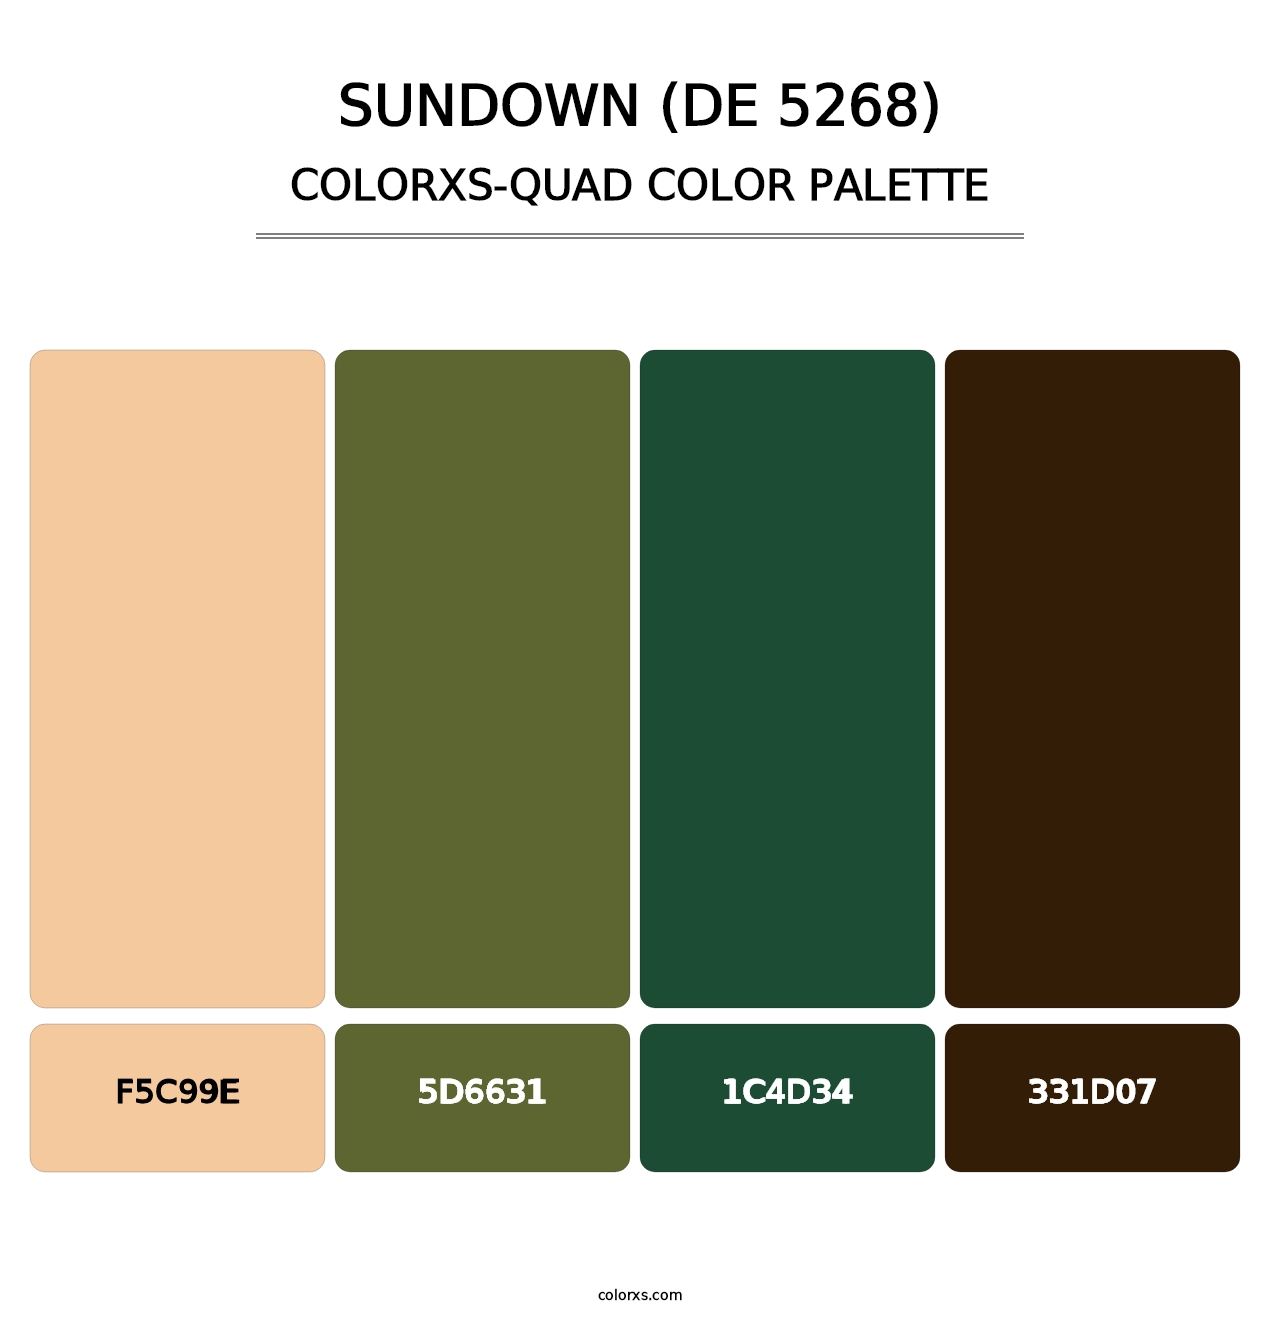 Sundown (DE 5268) - Colorxs Quad Palette